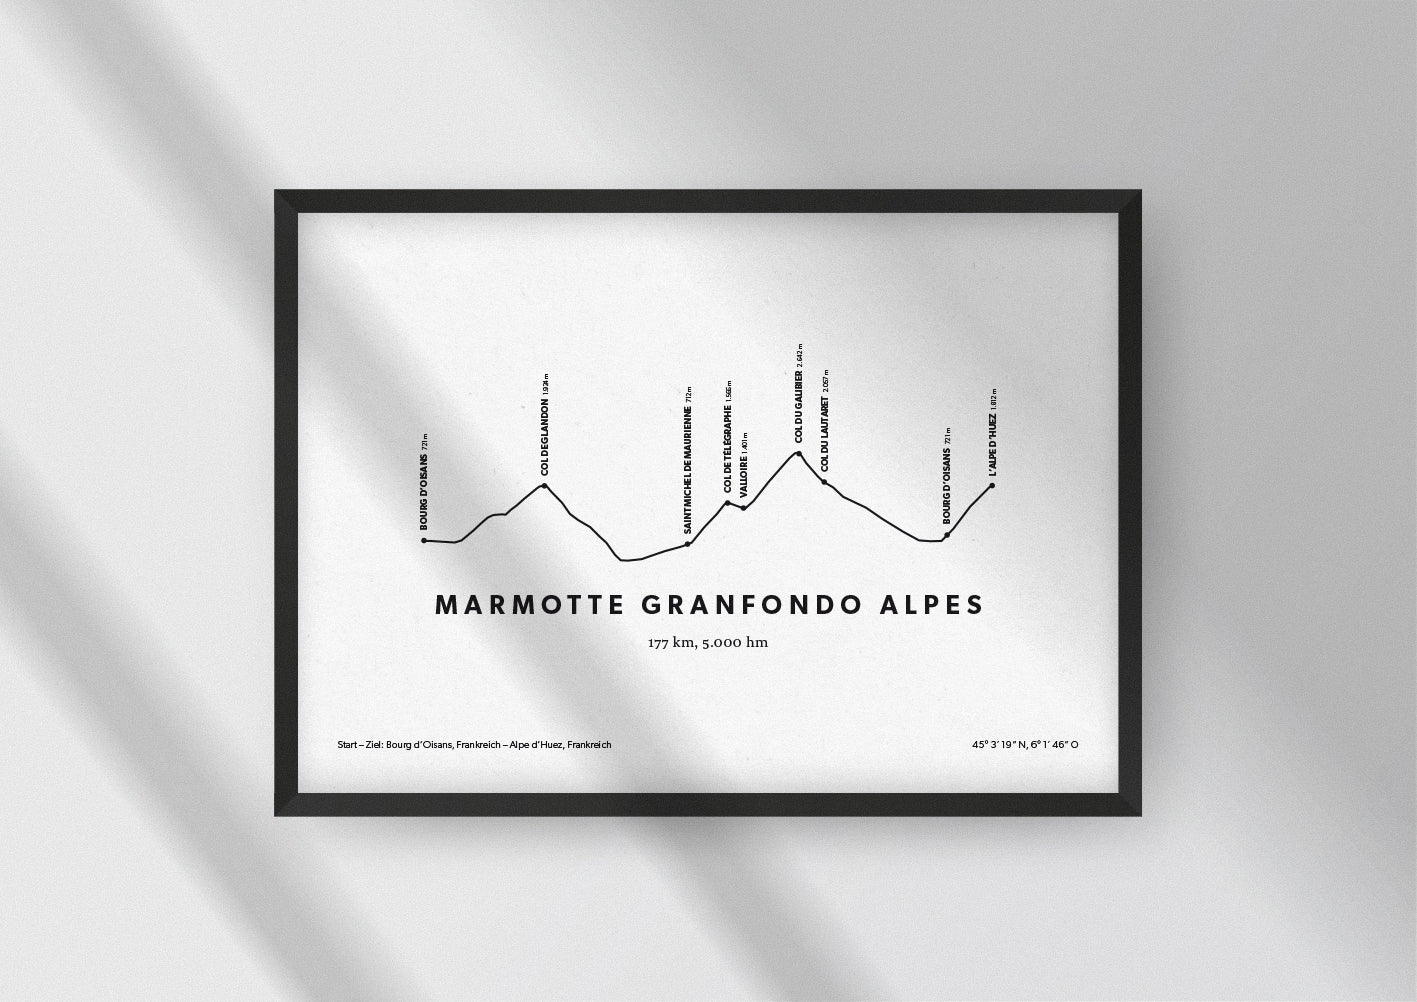 Minimalistische Illustration des Marmotte Granfondo Alpes, einem der schönsten Rad-Marathons in den Alpen, als stilvoller Einrichtungsgegenstand für Zuhause.